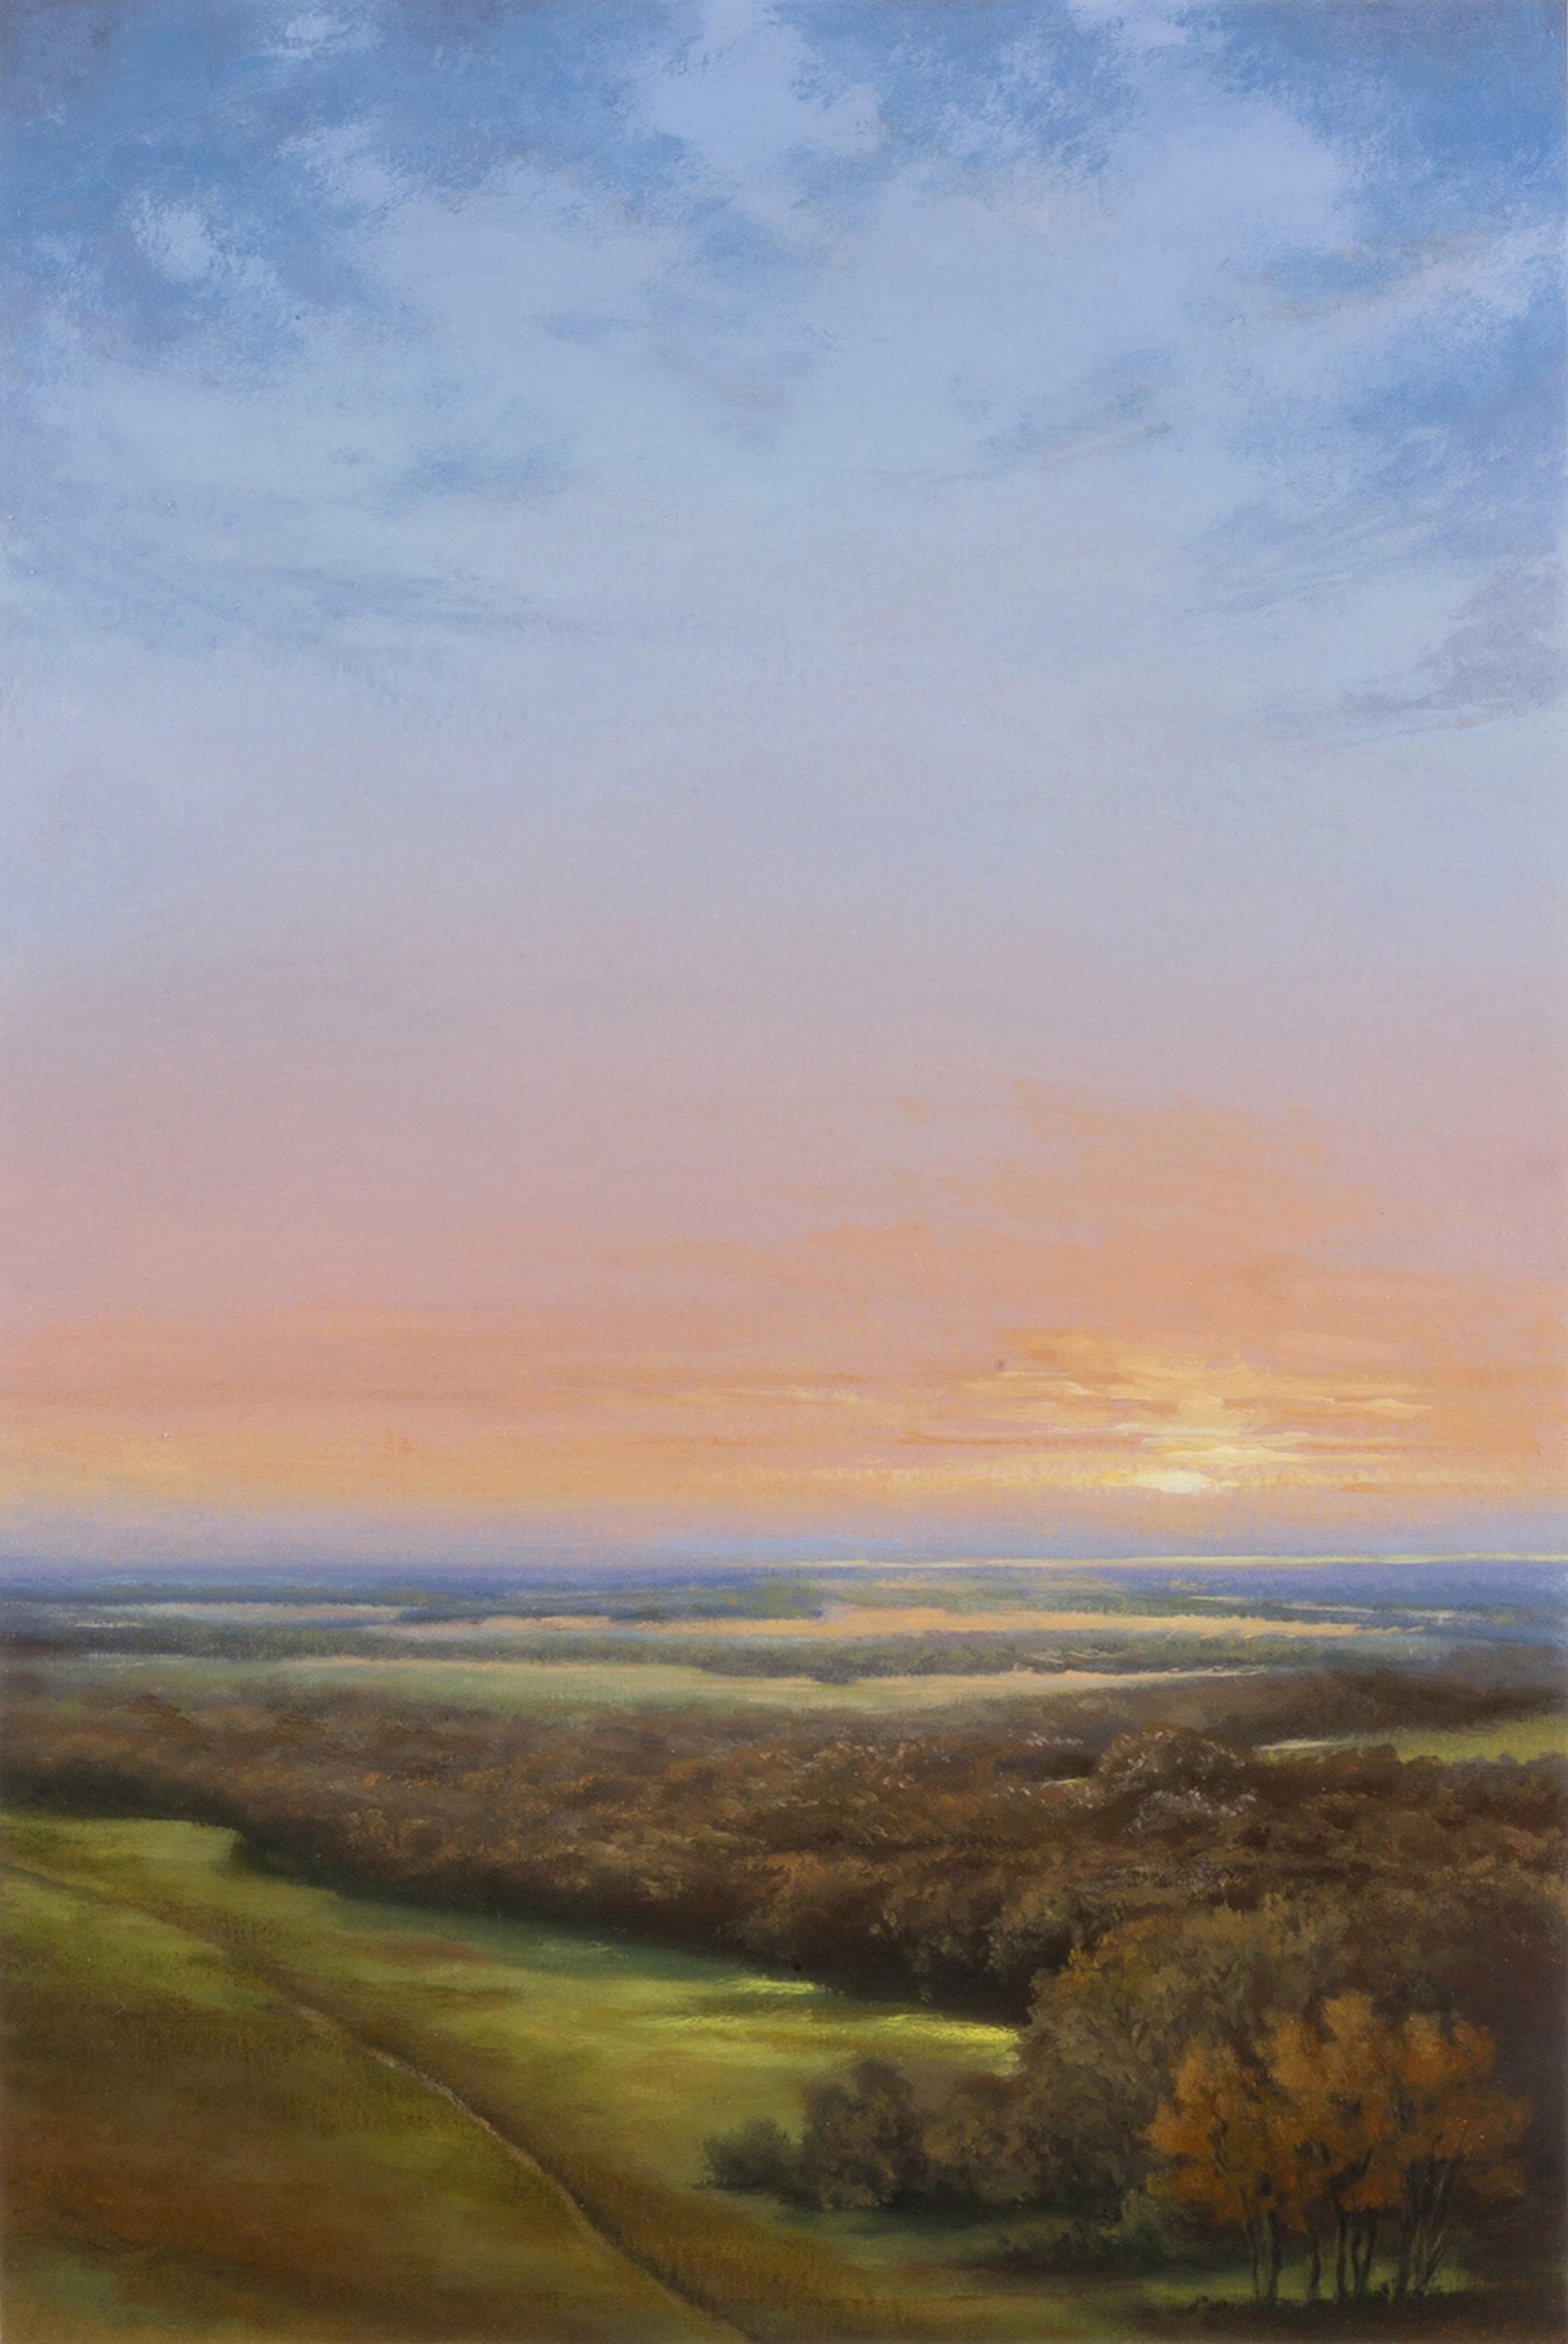 Prairie Path by Victoria Adams